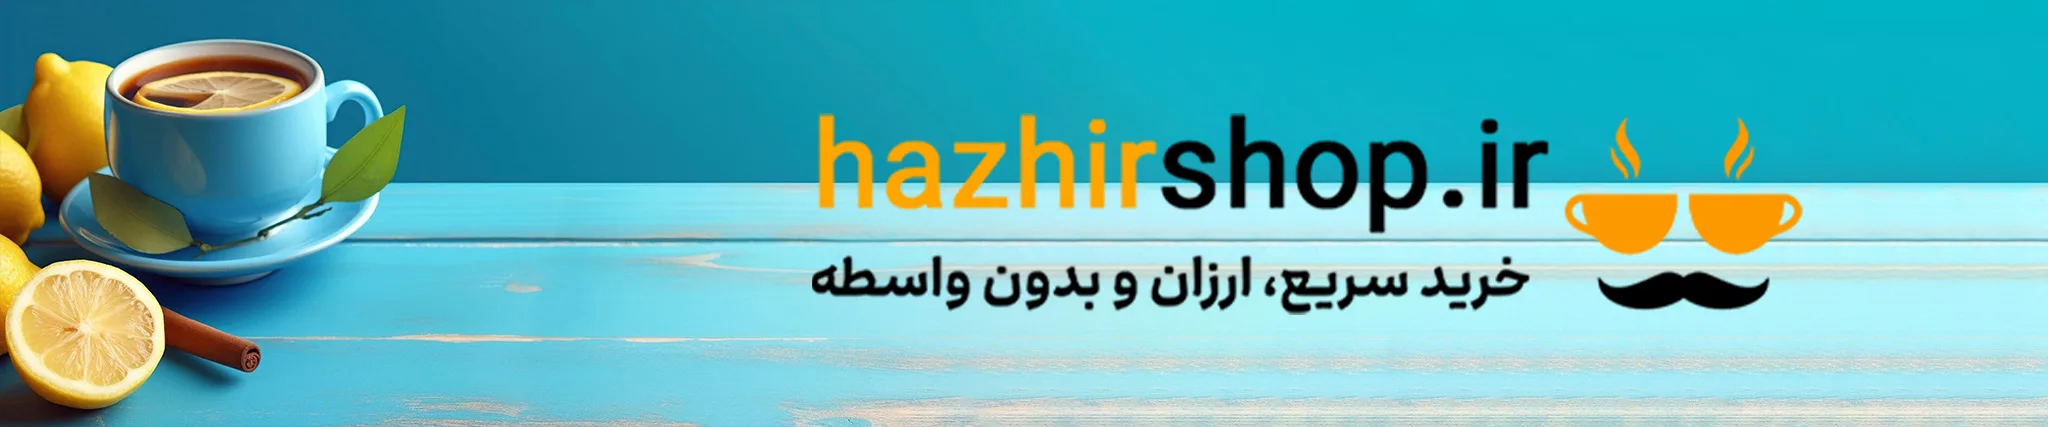 hazhirshop